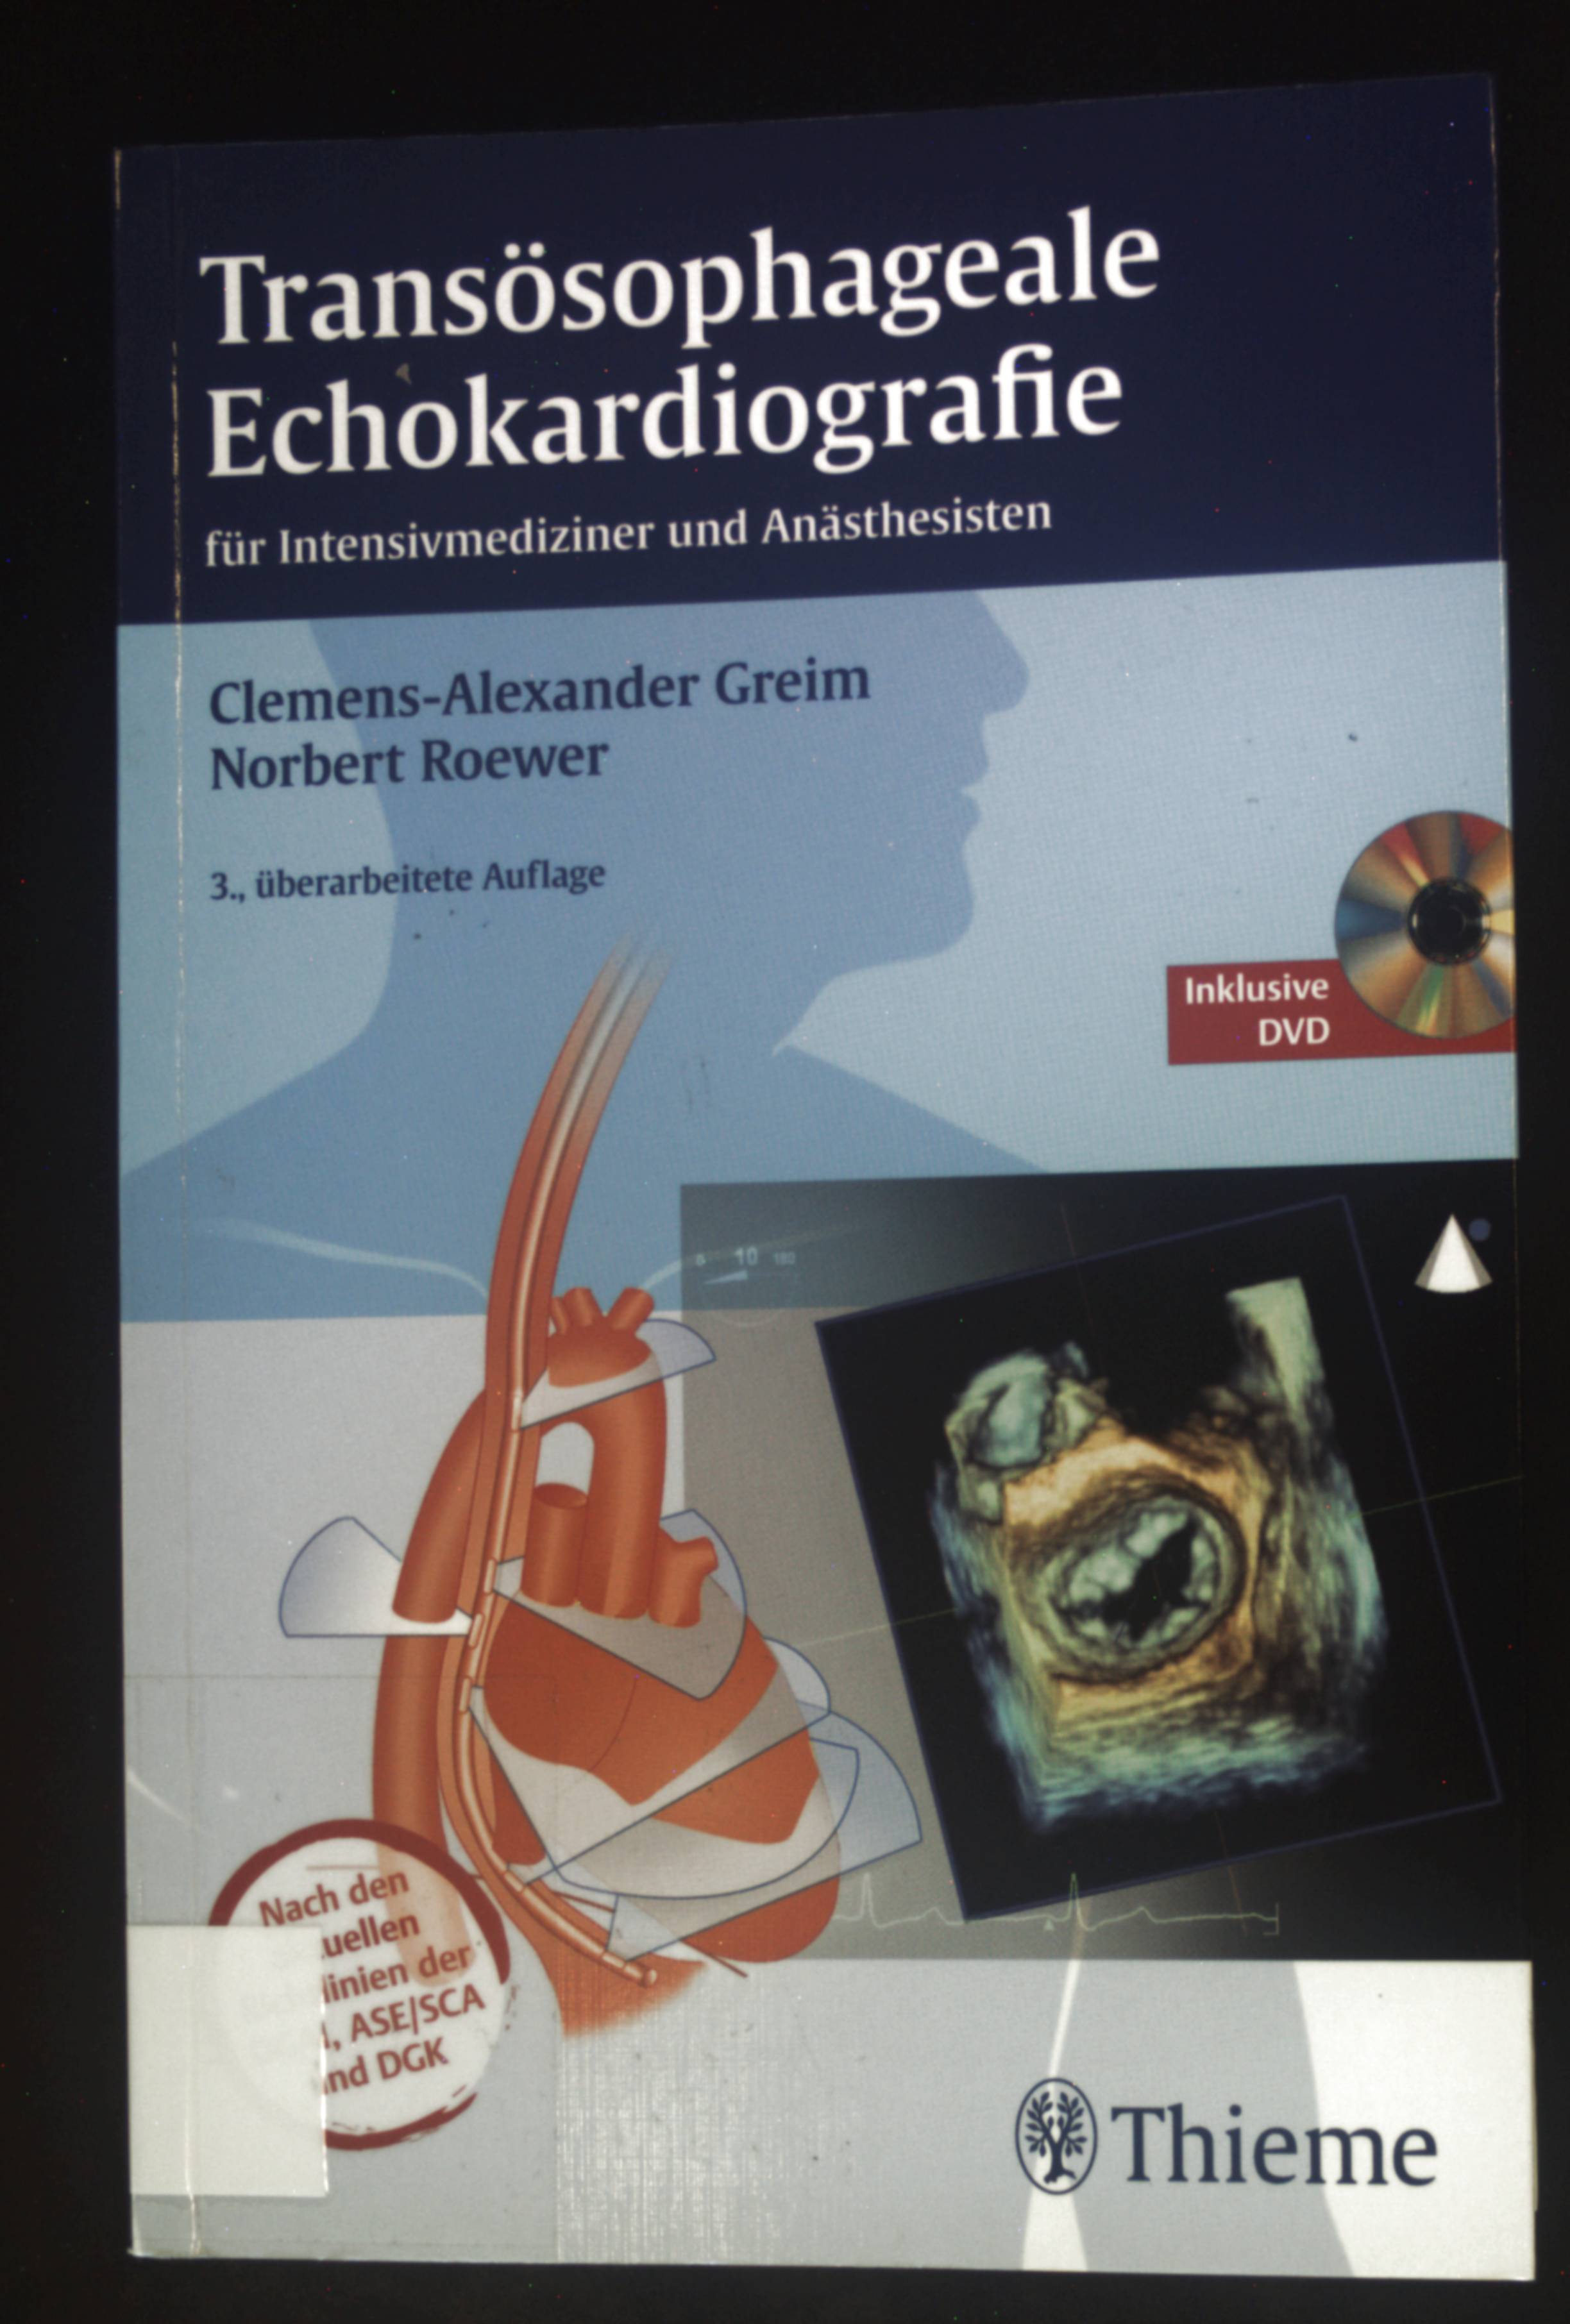 Transösophageale Echokardiografie : für Intesivmediziner und Anästhesisten ; nach den richtlinien der DGAL, ASE/SCA und DGK - Greim, Clemens-Alexander und Norbert Roewer